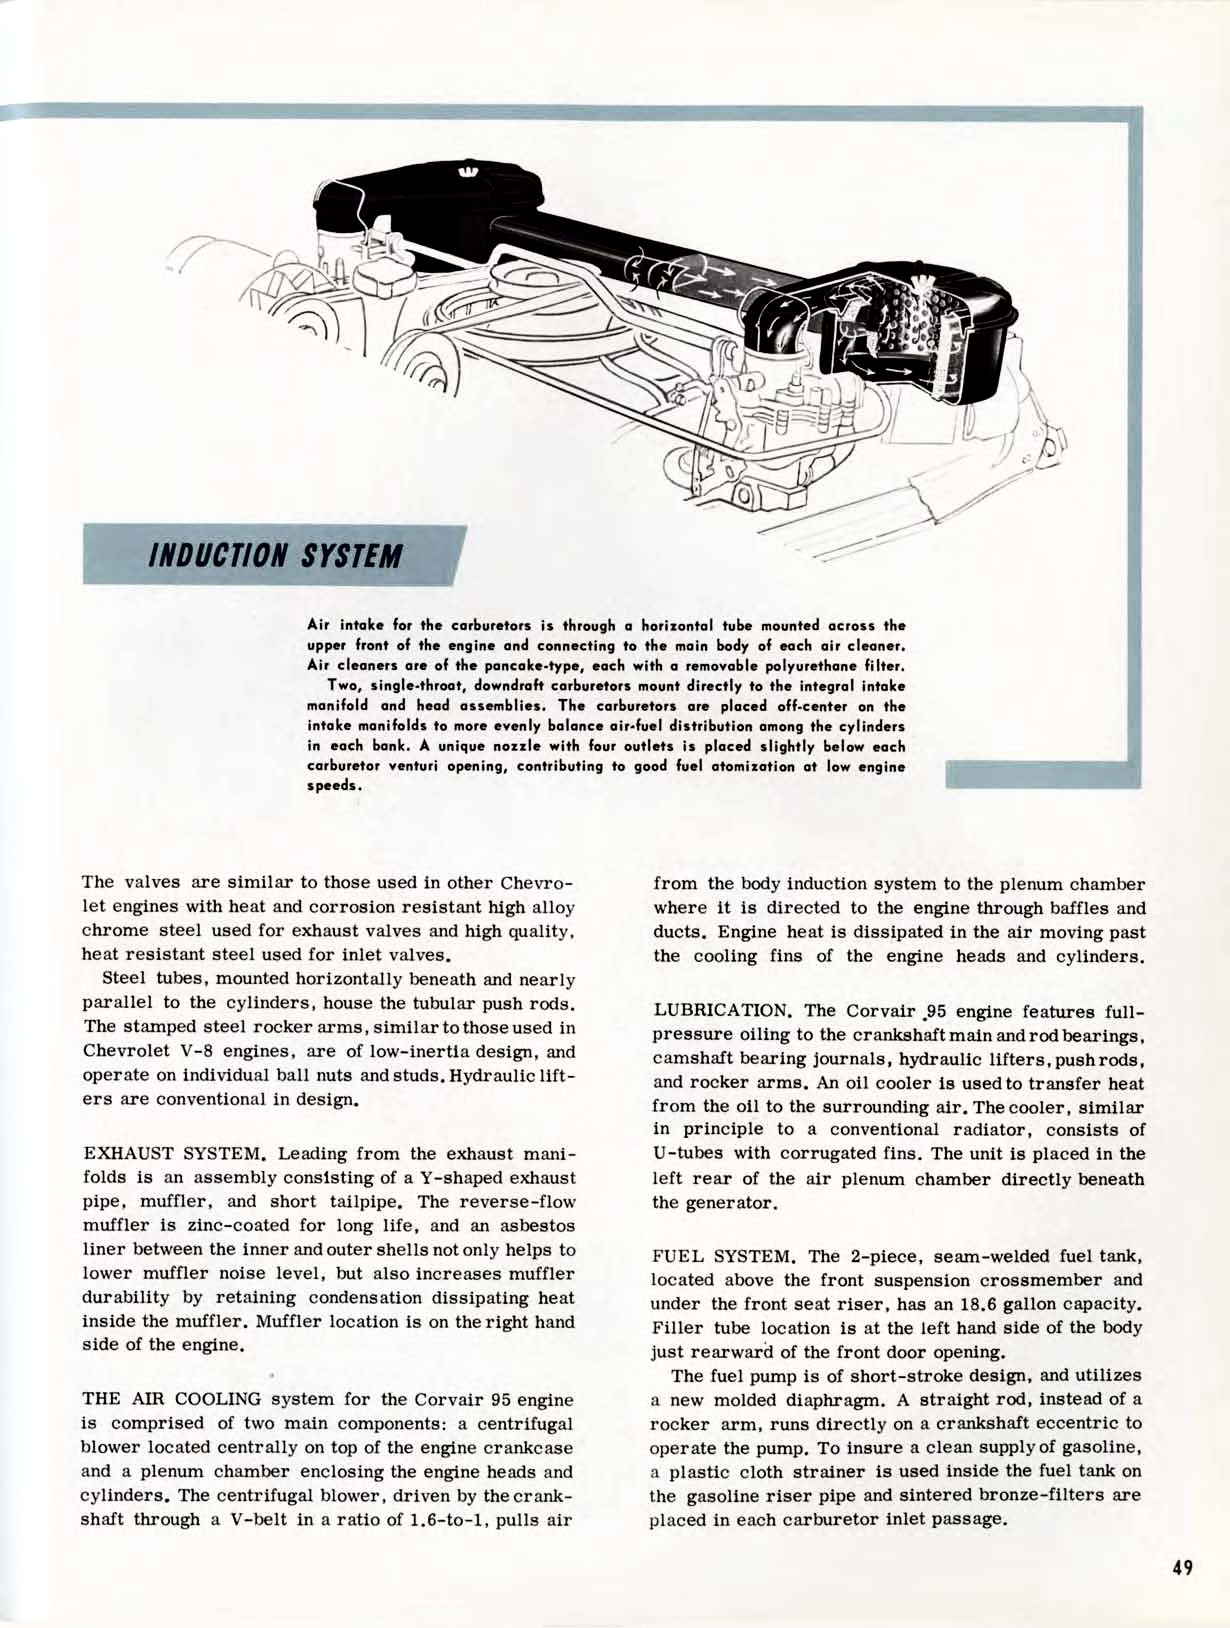 1961 Chevrolet Truck Engineering Features-49